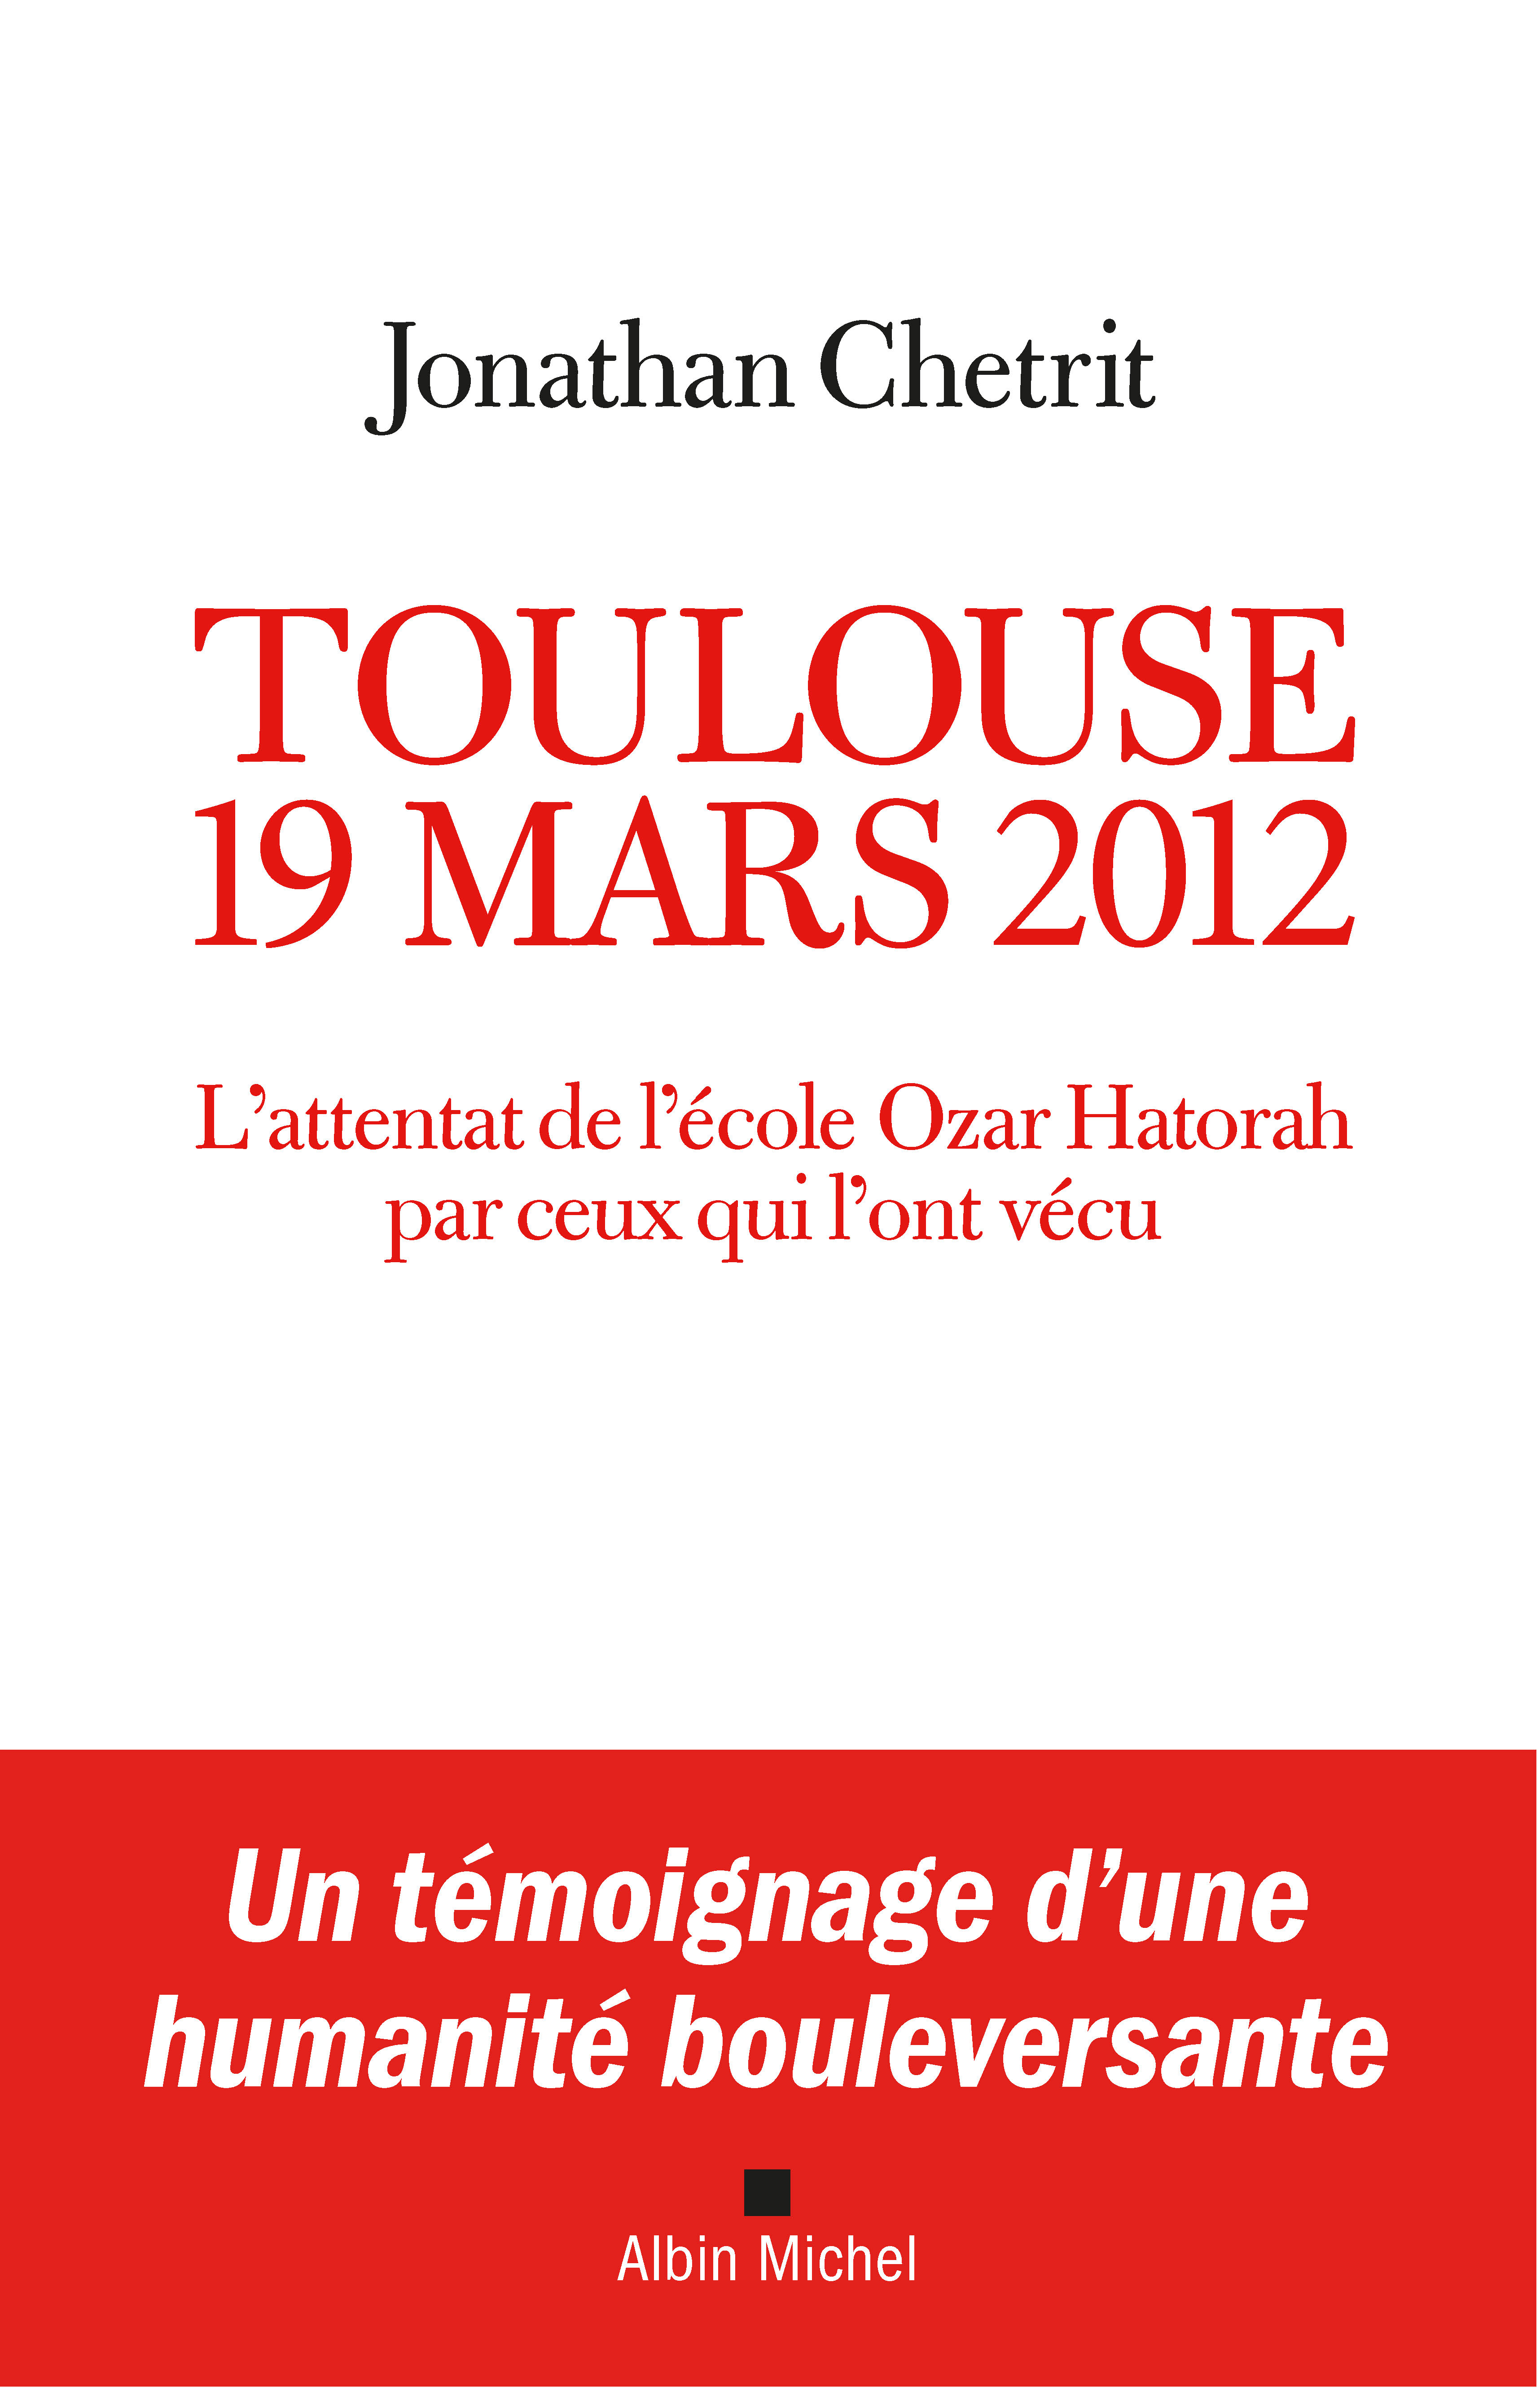 Couverture du livre Toulouse 19 mars 2012